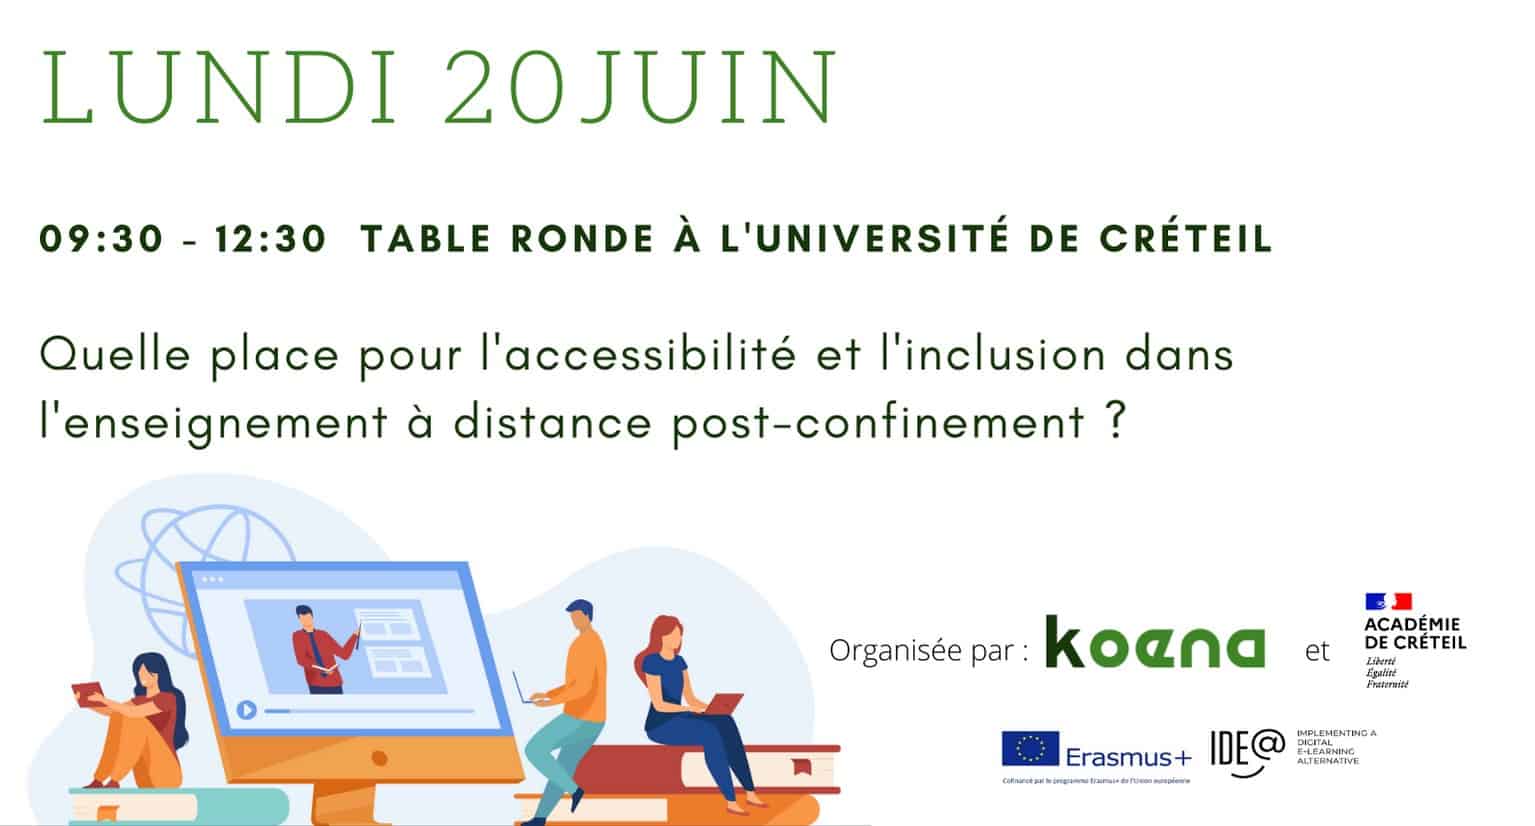 Lundi 20 juin 09h30 - 12h30 Table ronde à l'université de Créteil.  Quelle place pour l'accessibilité et l'inclusion dans l'enseignement à distance post-confinement ? Organisée par Koena et l'académie de Créteil. Projet Ide@ Erasmus+